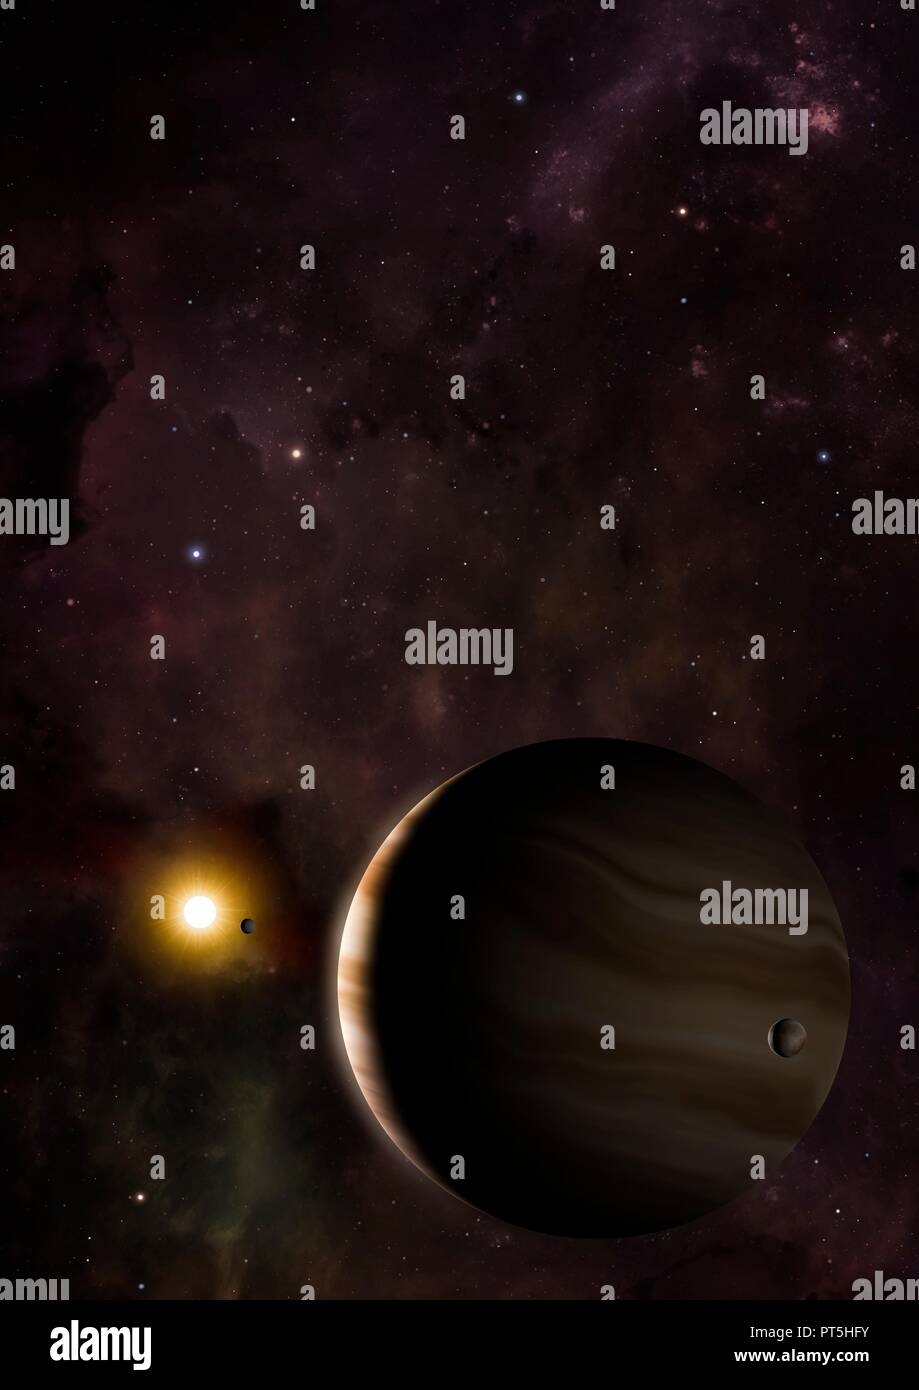 Darstellung der exoplanet (extrasolarer Planet) Wasp 39 b. Wasp 39 b ist ein so genannter Hot Saturn, mit einer Masse über ein Drittel des Jupiter. Er umkreist seinen Zentralstern, Wasp 39, bei einer Entfernung von nur 0,05 astronomischen Einheiten, rund ein Zehntel der Entfernung des Merkur von der Sonne etwa 700 Lichtjahre von der Erde entfernt, die Wespe 39 System ist das Sternbild Jungfrau. Stockfoto